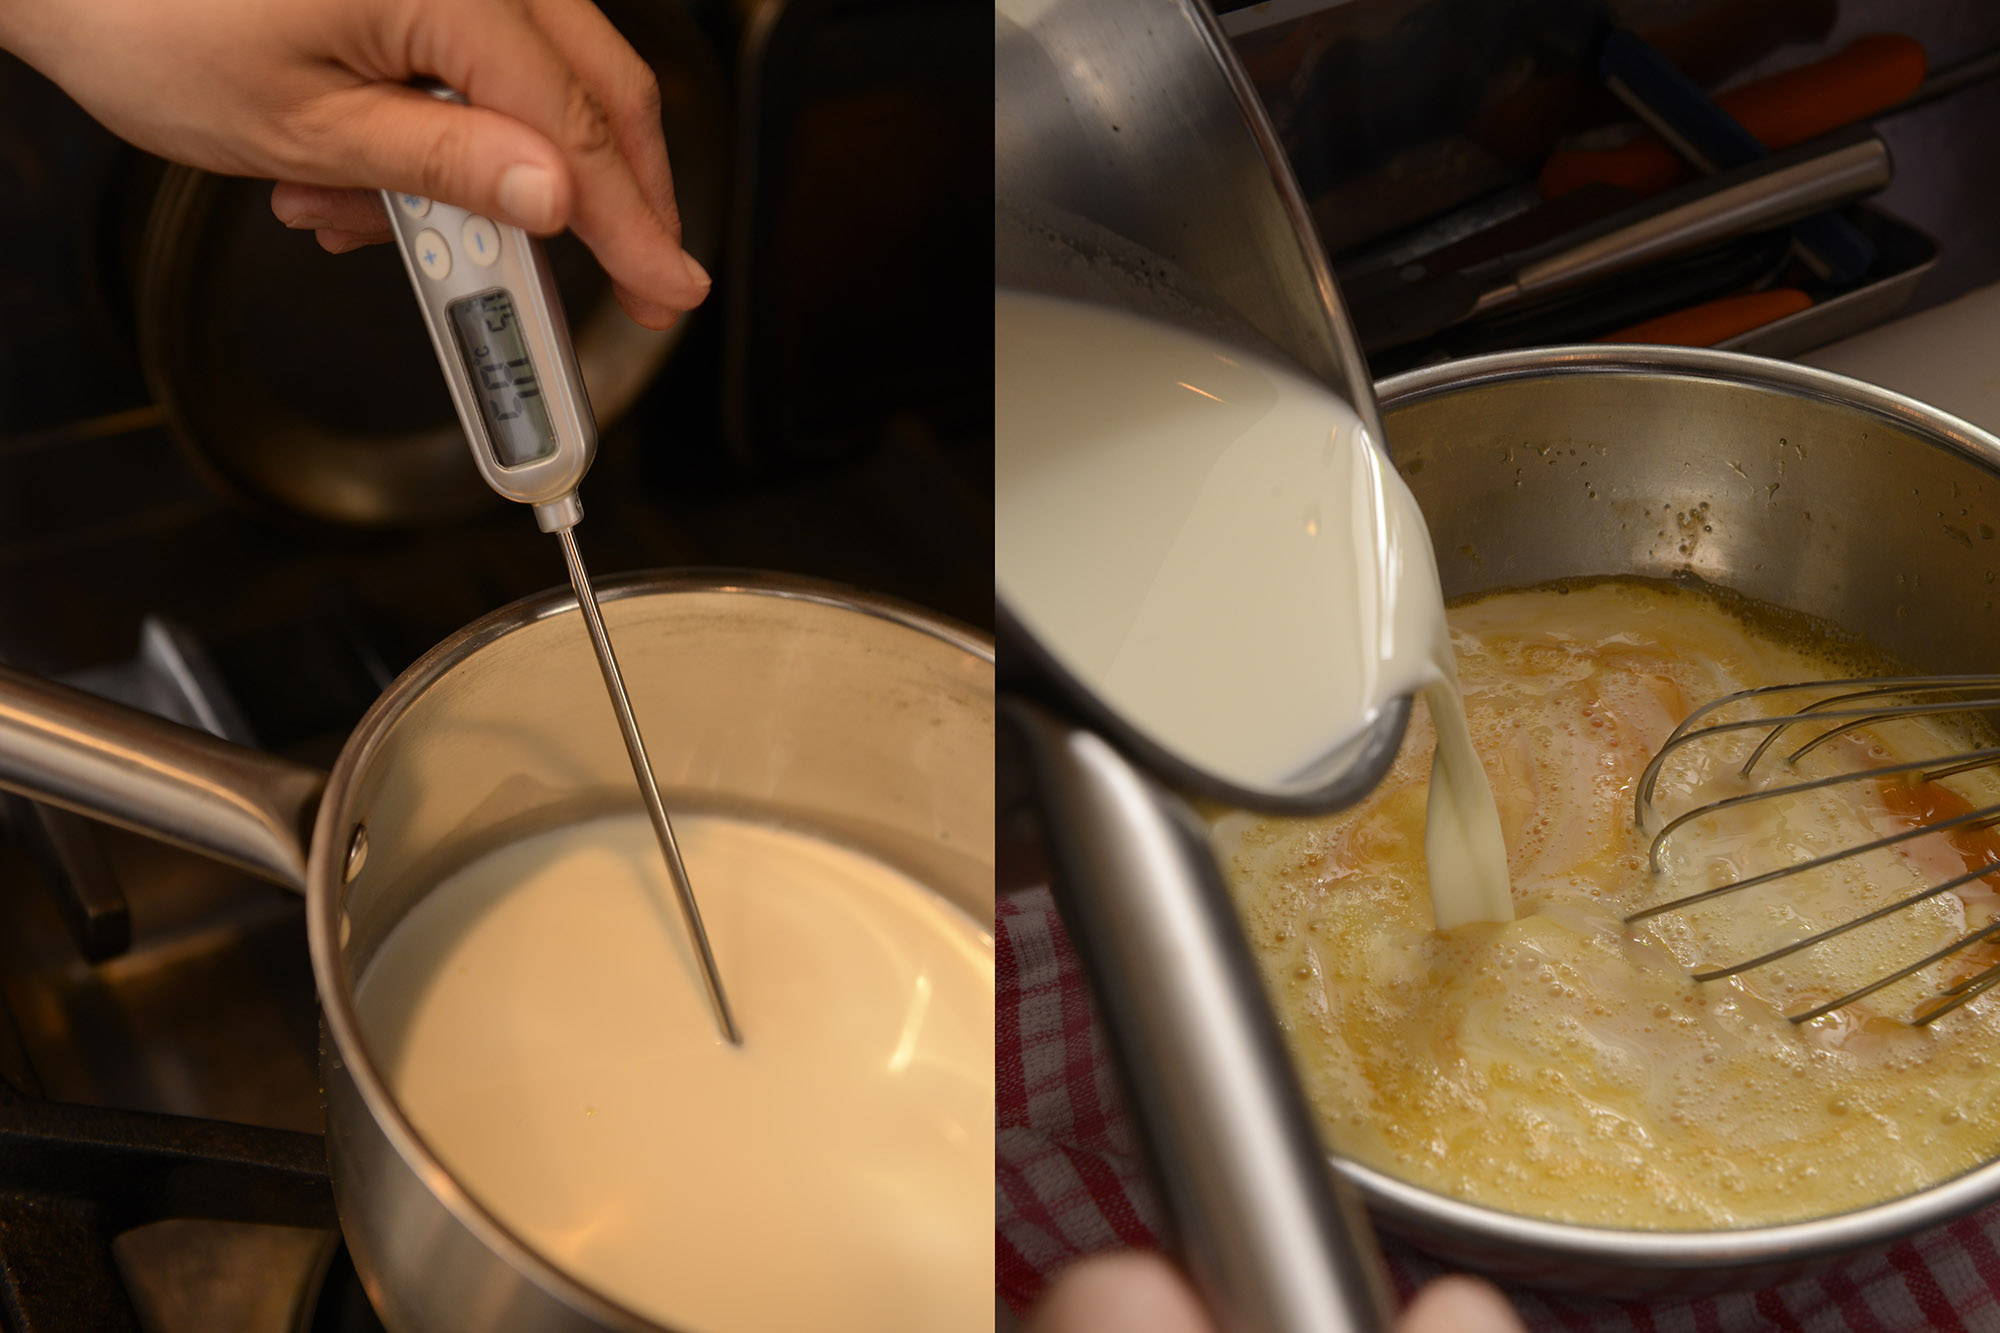 【２】鍋にグラニュー糖20g、牛乳、生クリームを入れ、中火にかけて泡立て器で軽く混ぜながら60℃まで温める。卵のボウルに温めた牛乳を混ぜながら加える。 POINT：牛乳を高温で熱すると風味と味わいを損ねてしまう。温める時は60℃まで、を厳守する。